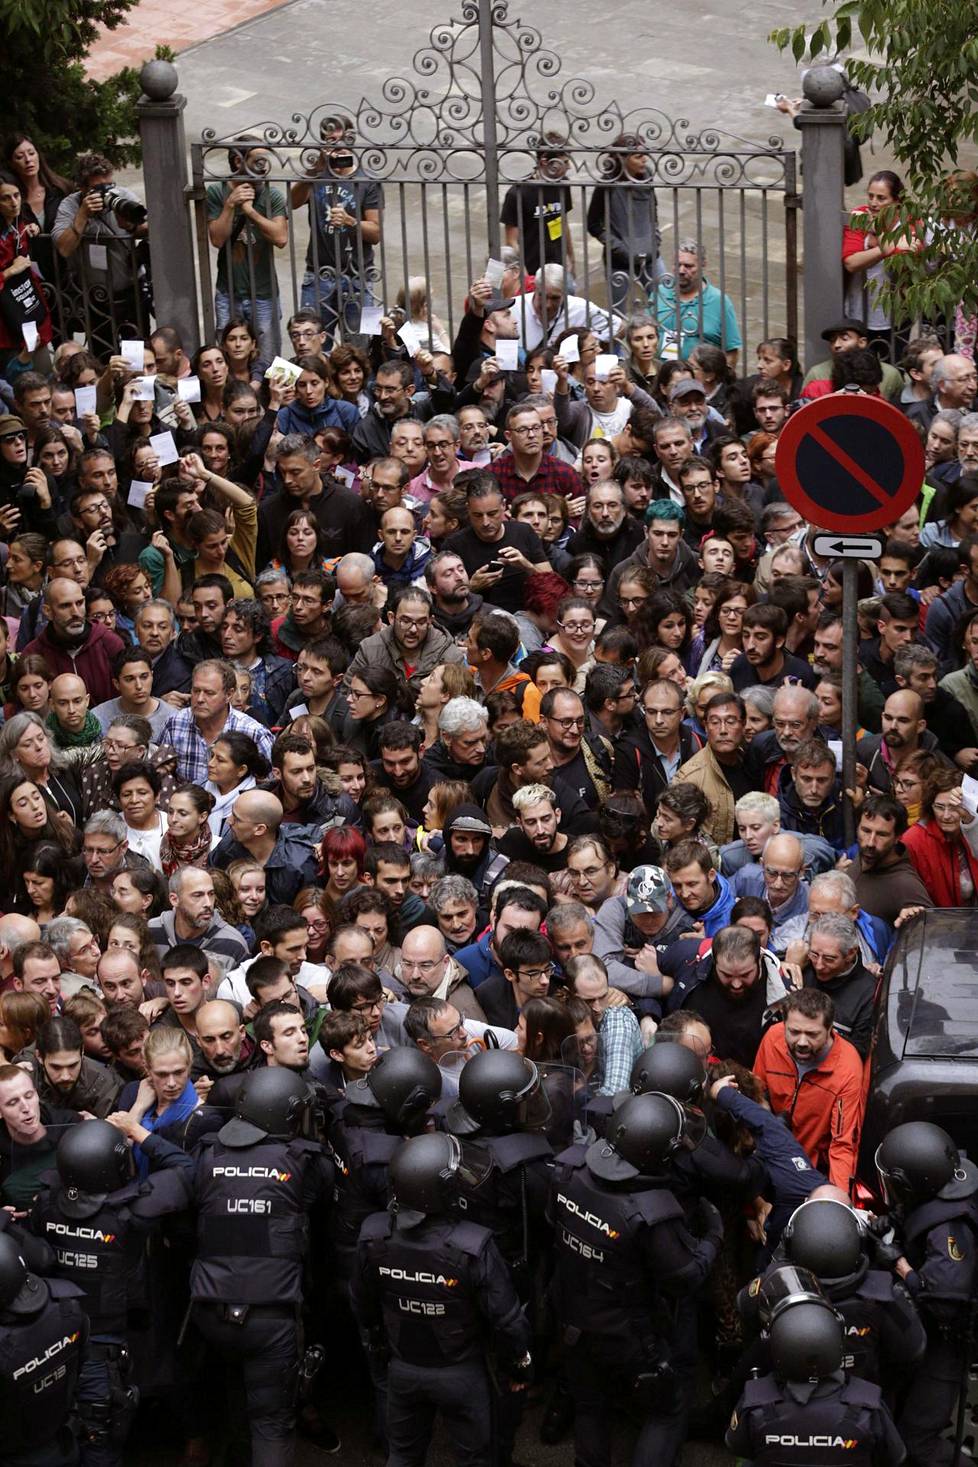 Espanjan valtion mellakkapoliisit muodostivat poliisimuurin Ramon Llull -koulun ympärille Barcelonassa.